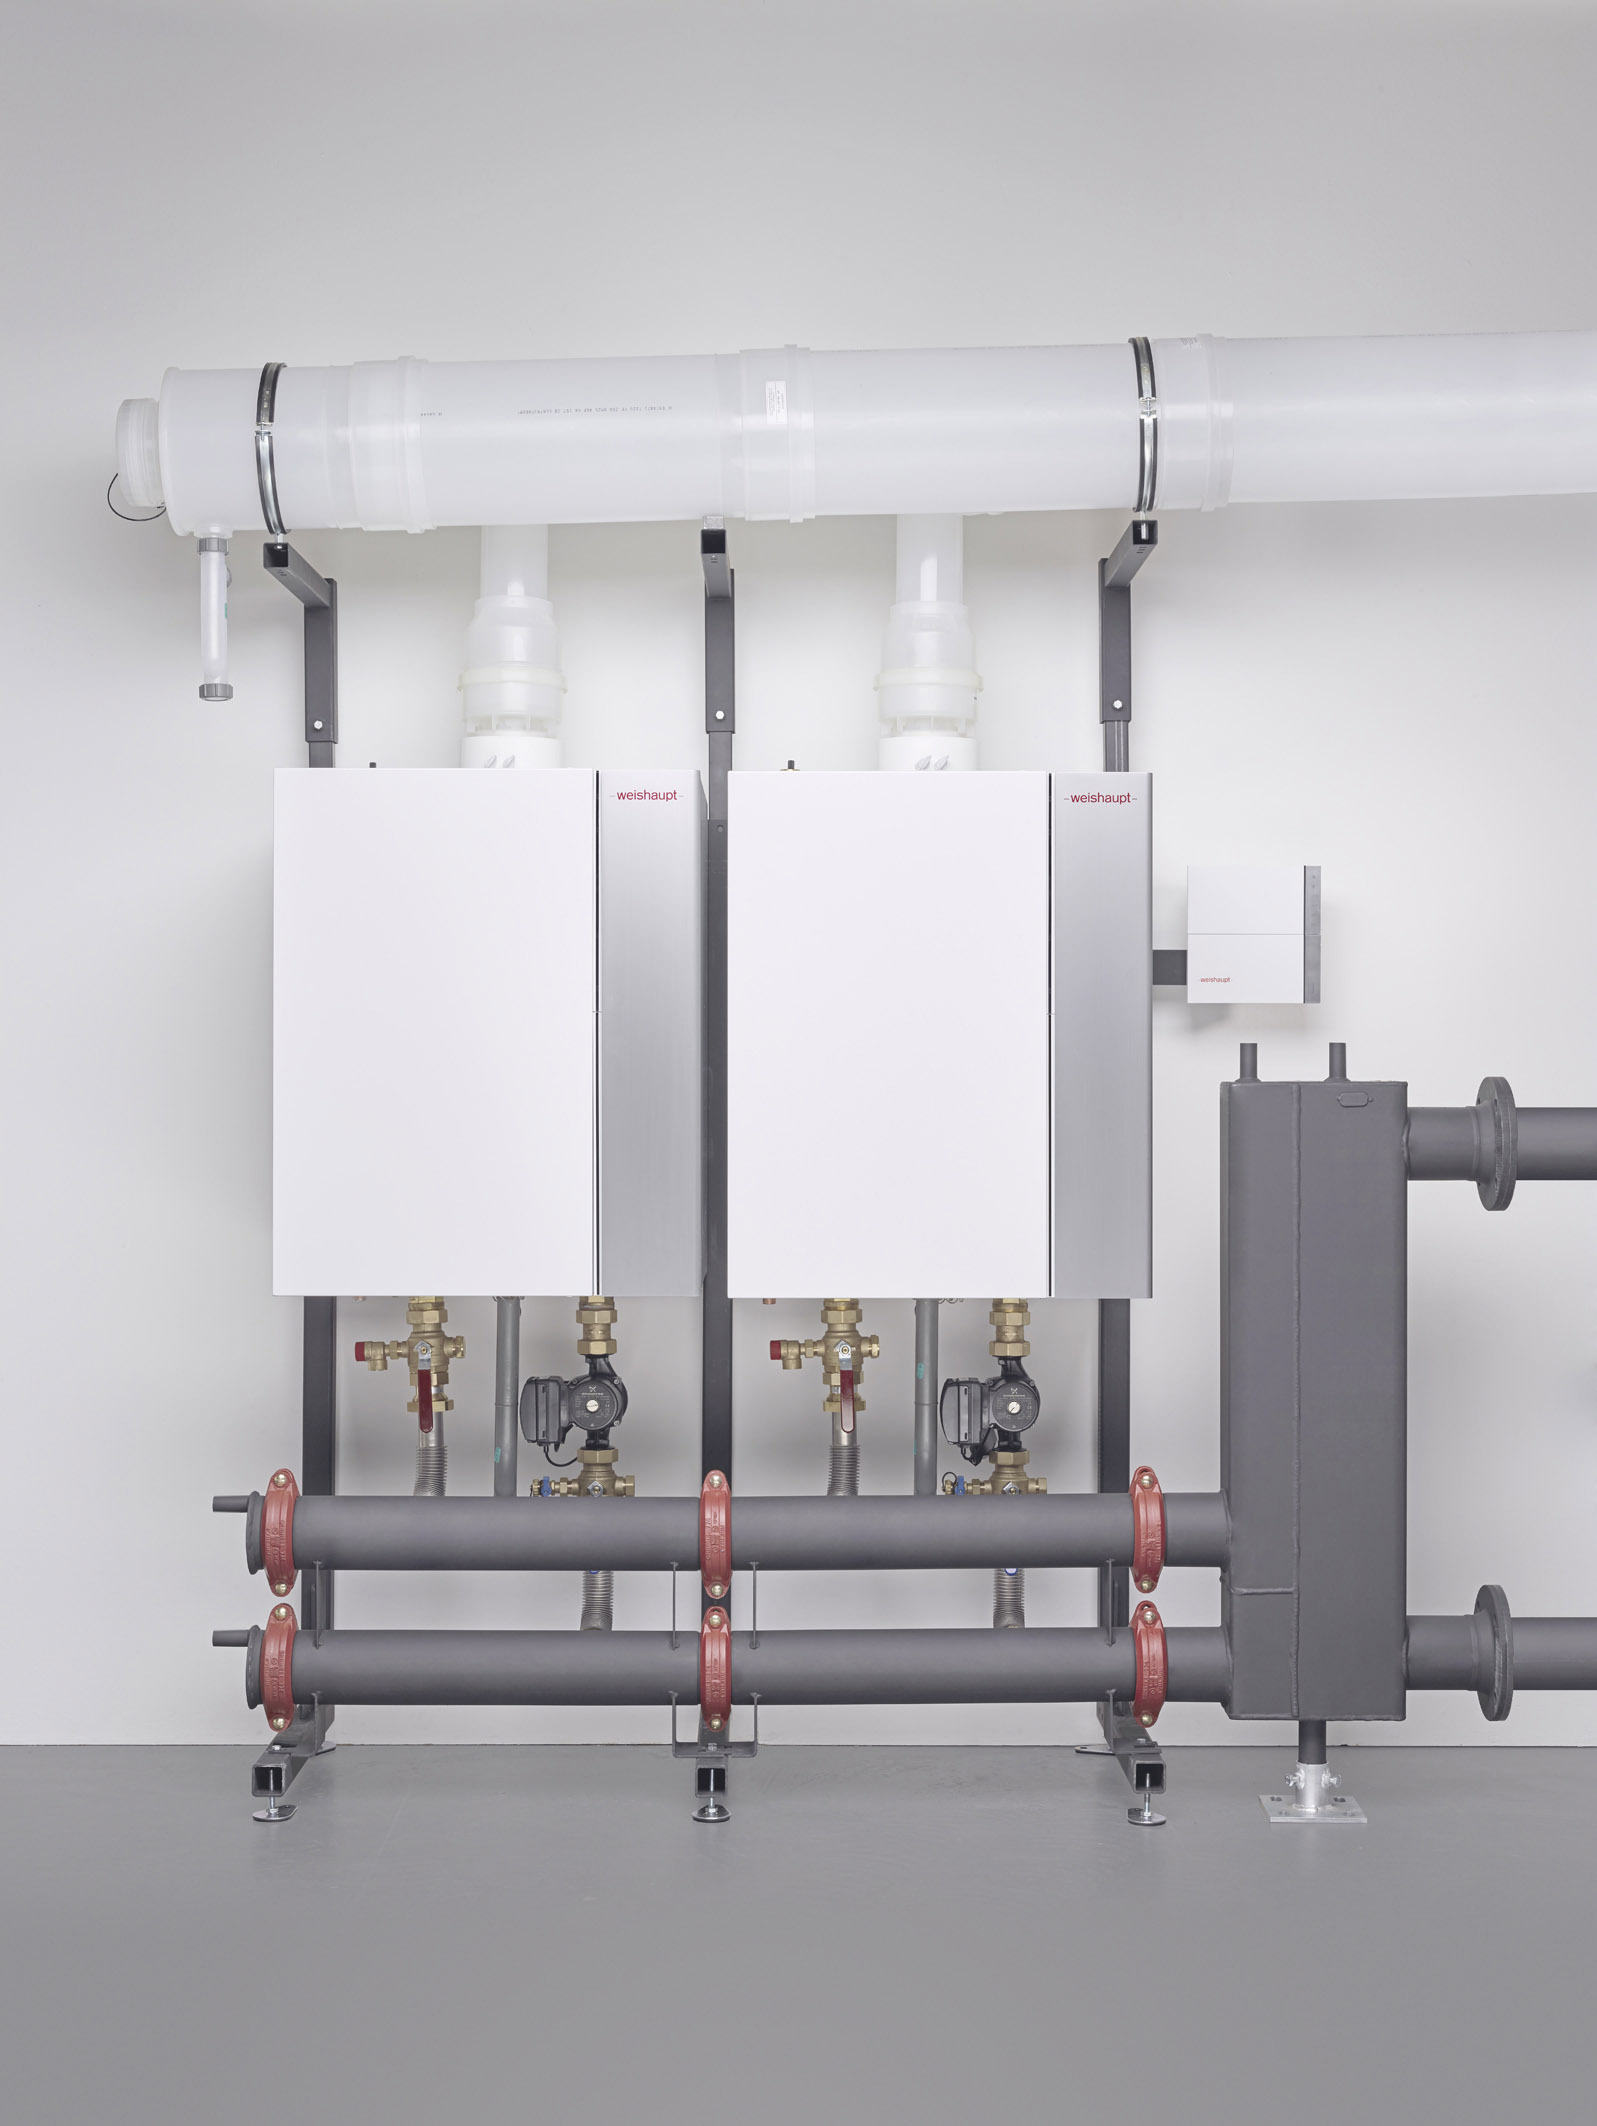 Fig.: Max Weishaupt GmbH - Impianto di caldaie a gas della ditta Weishaupt. L'assistenza caldaie a gas ad Aosta ﻿e Valle d'Aosta viene garantita dalla ditta Simonini Marco.